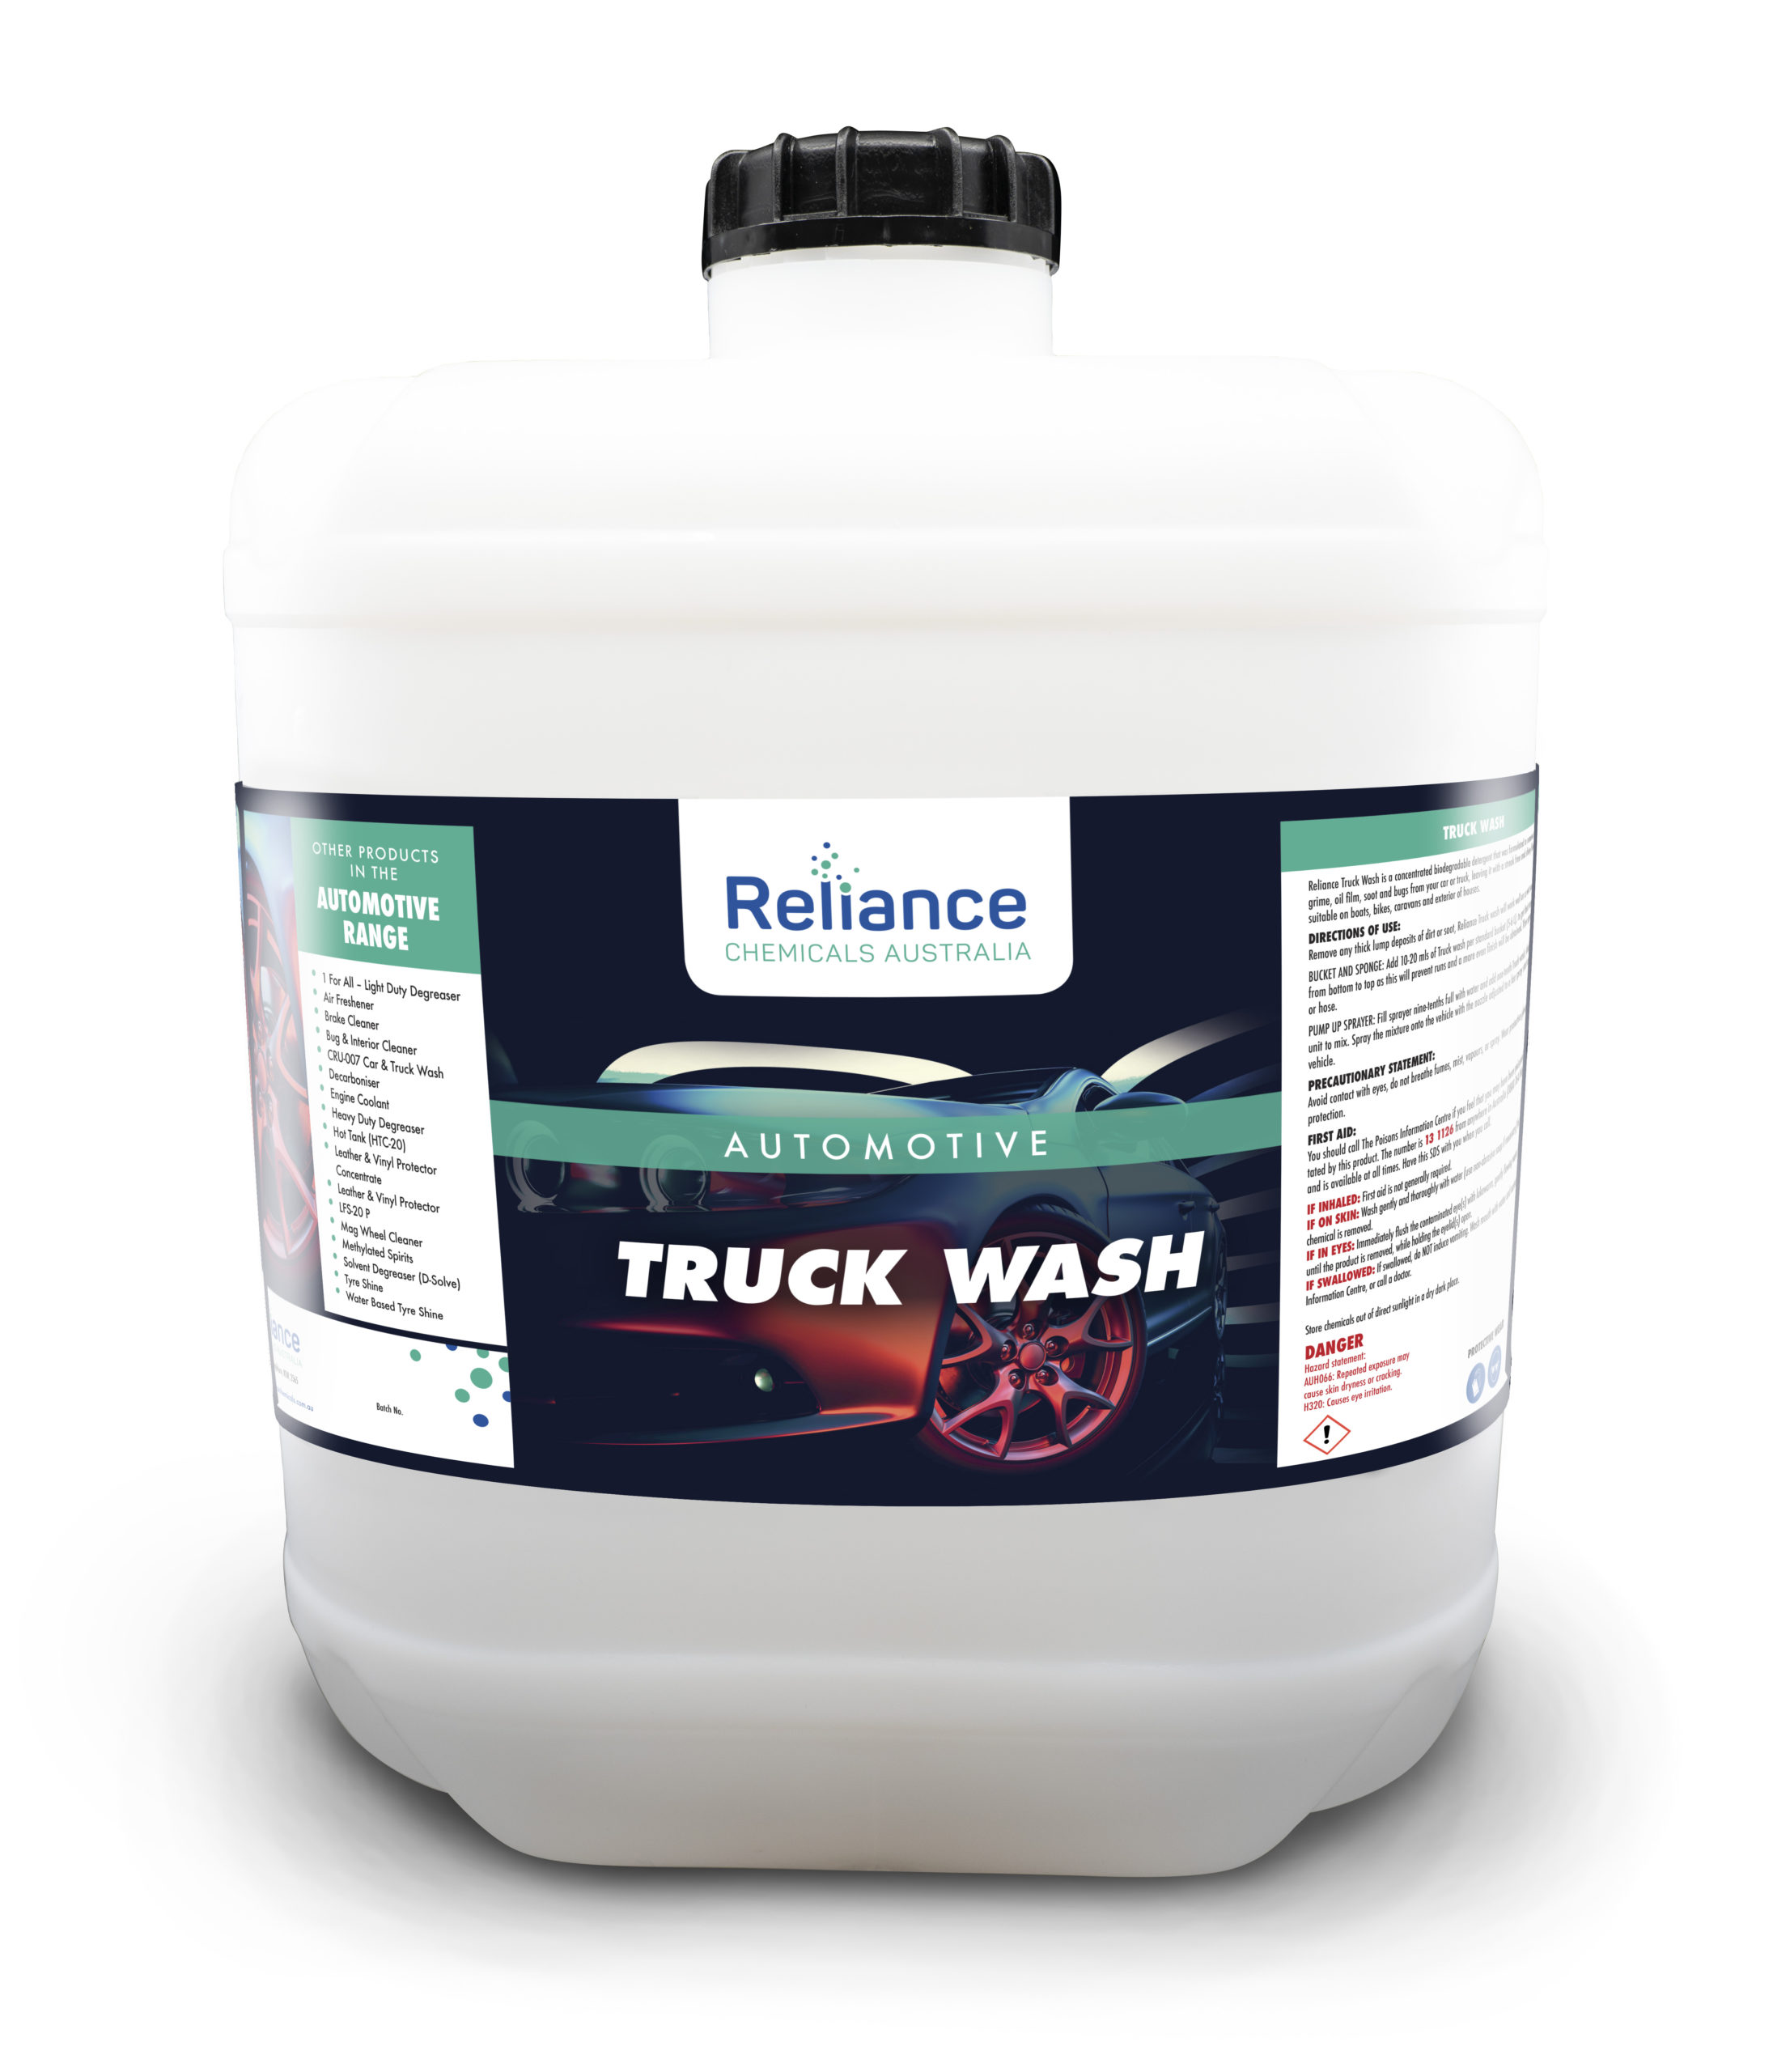 Truck Wash Chemicals